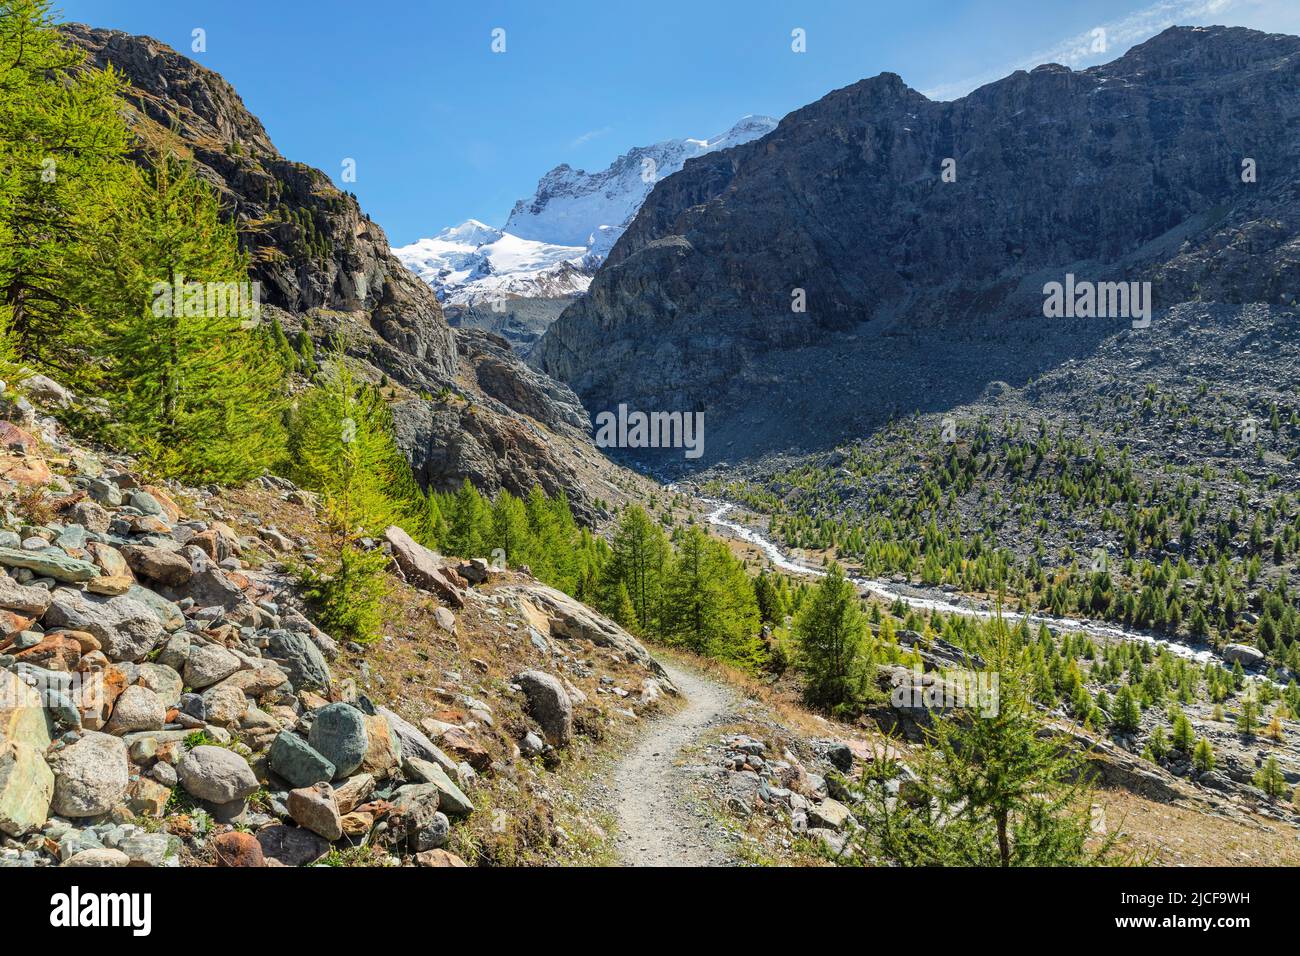 View from Stafelalp to Zmutt glacier and Zmuttbach valley, Swiss Alps, Valais, Switzerland Stock Photo